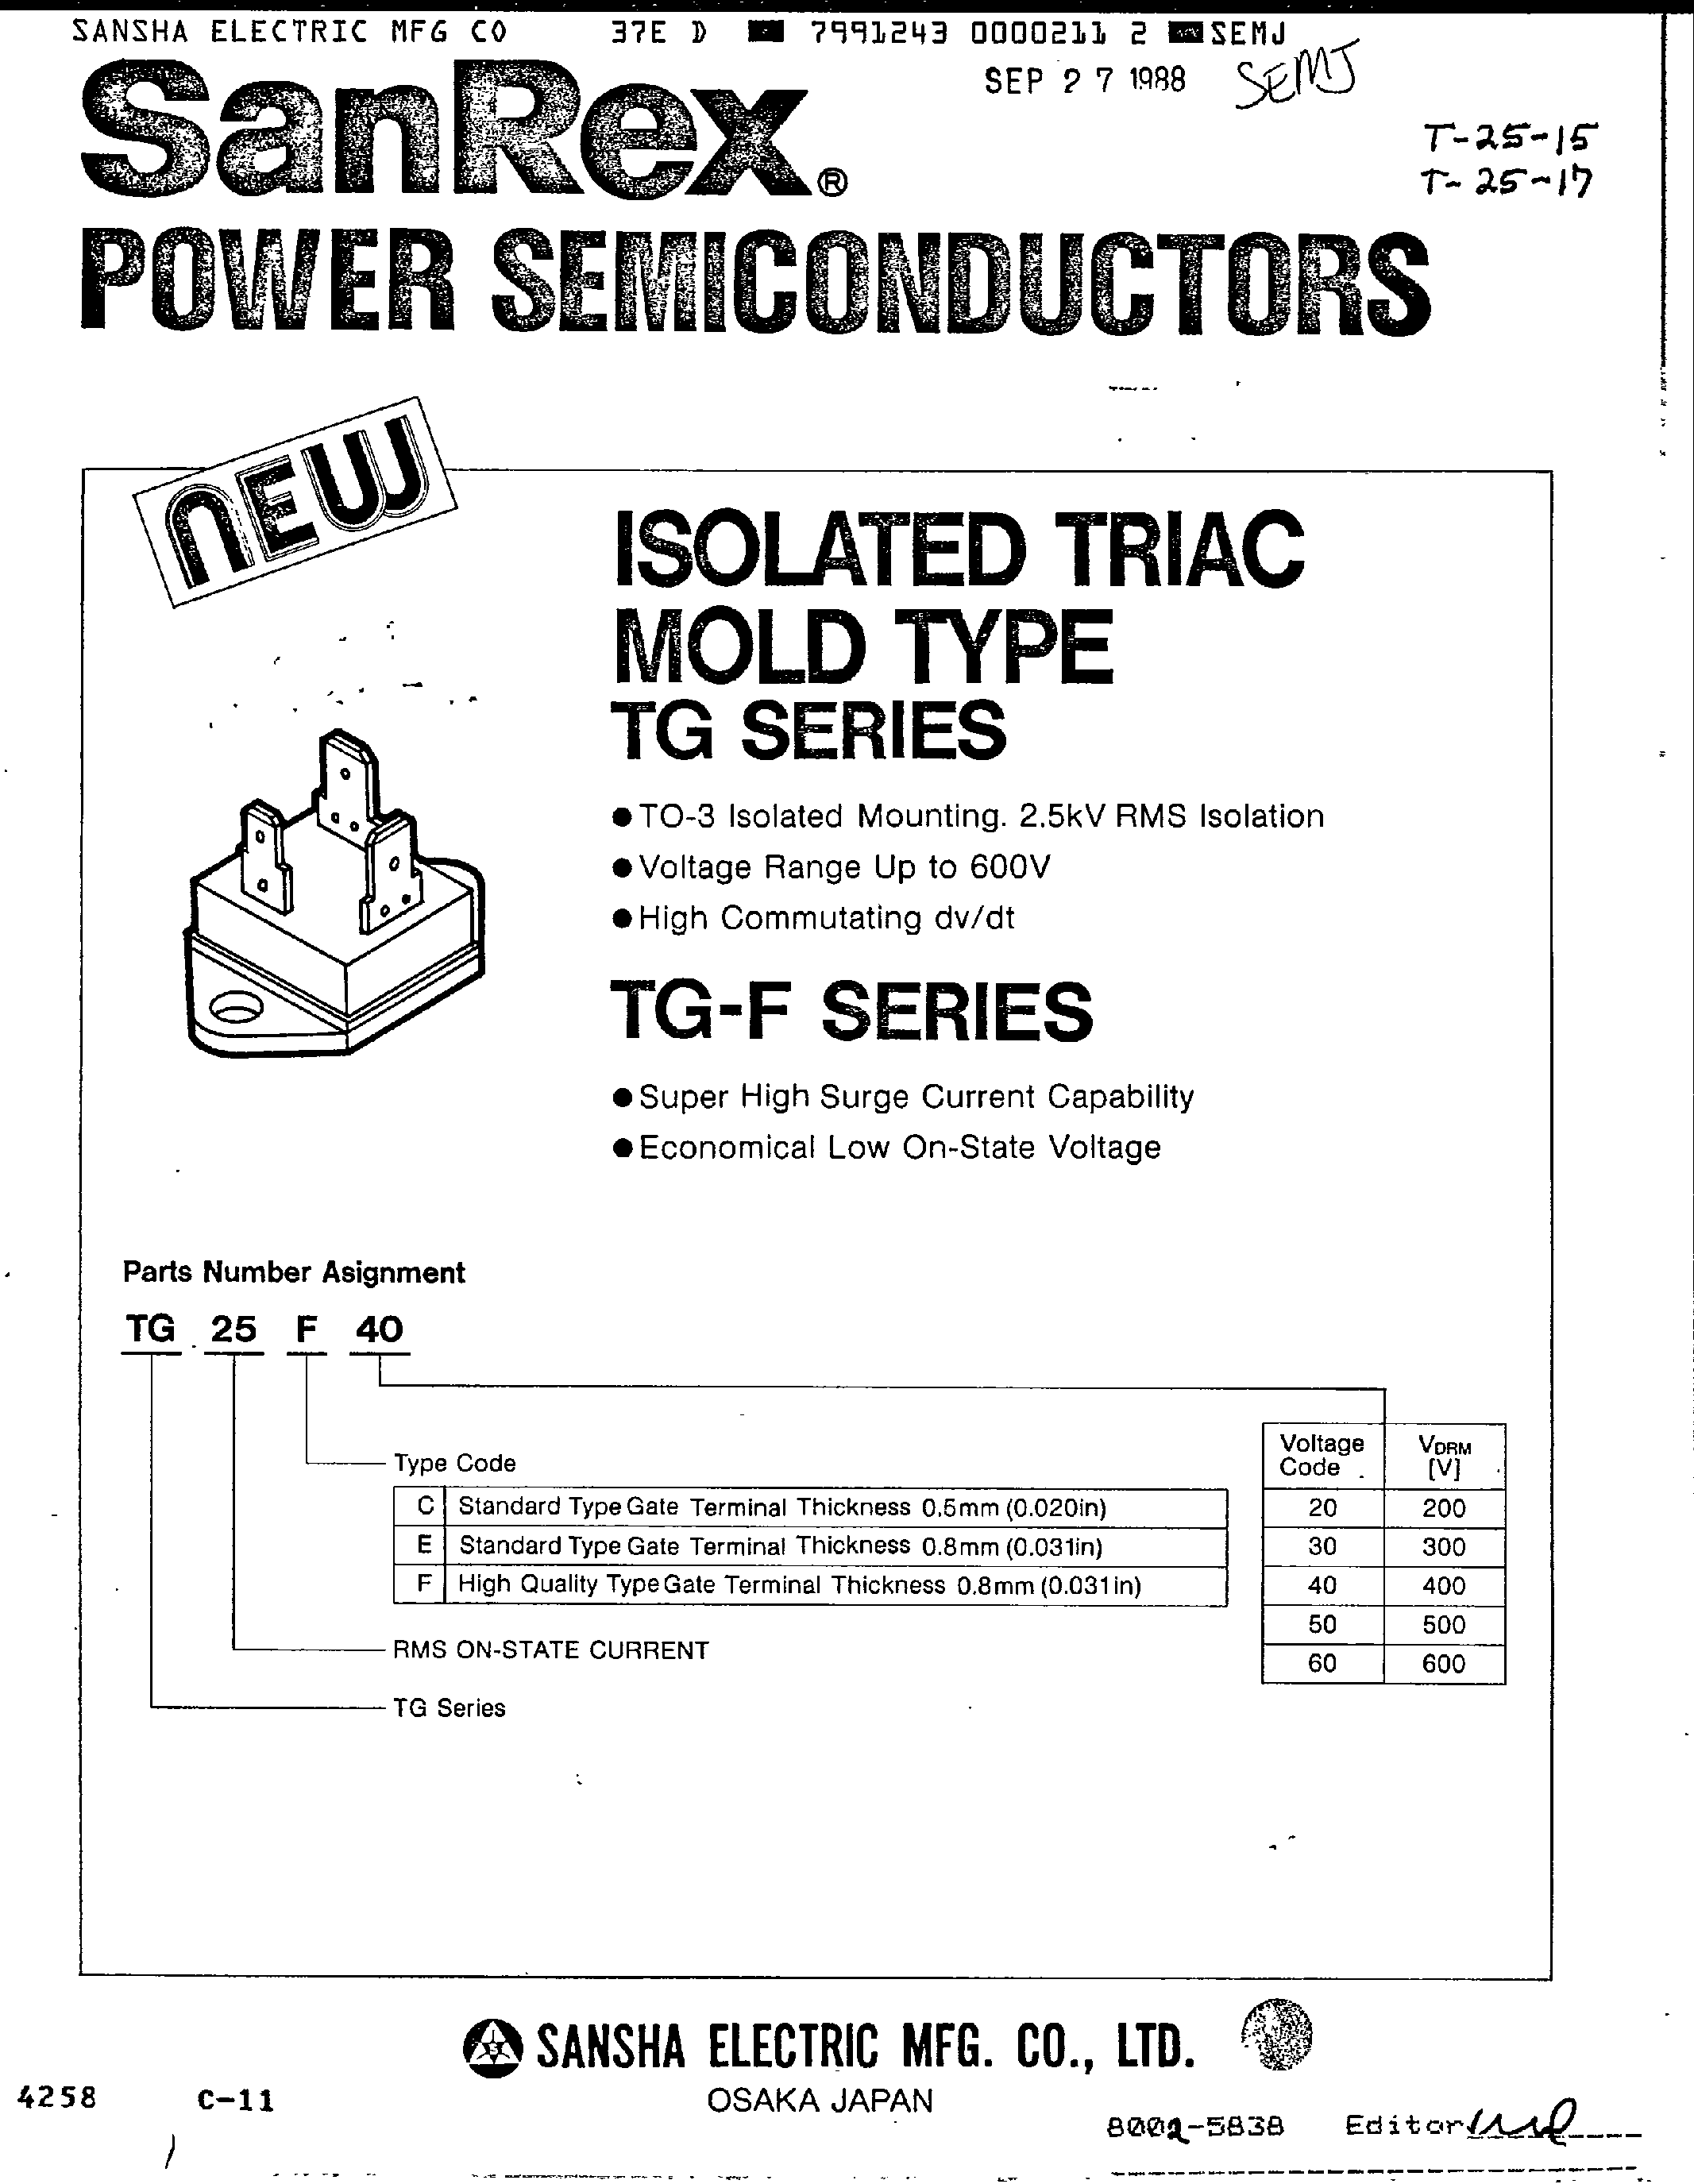 Datasheet TG25C60 - ISOLATED TRIAC MOLD TYPE page 1